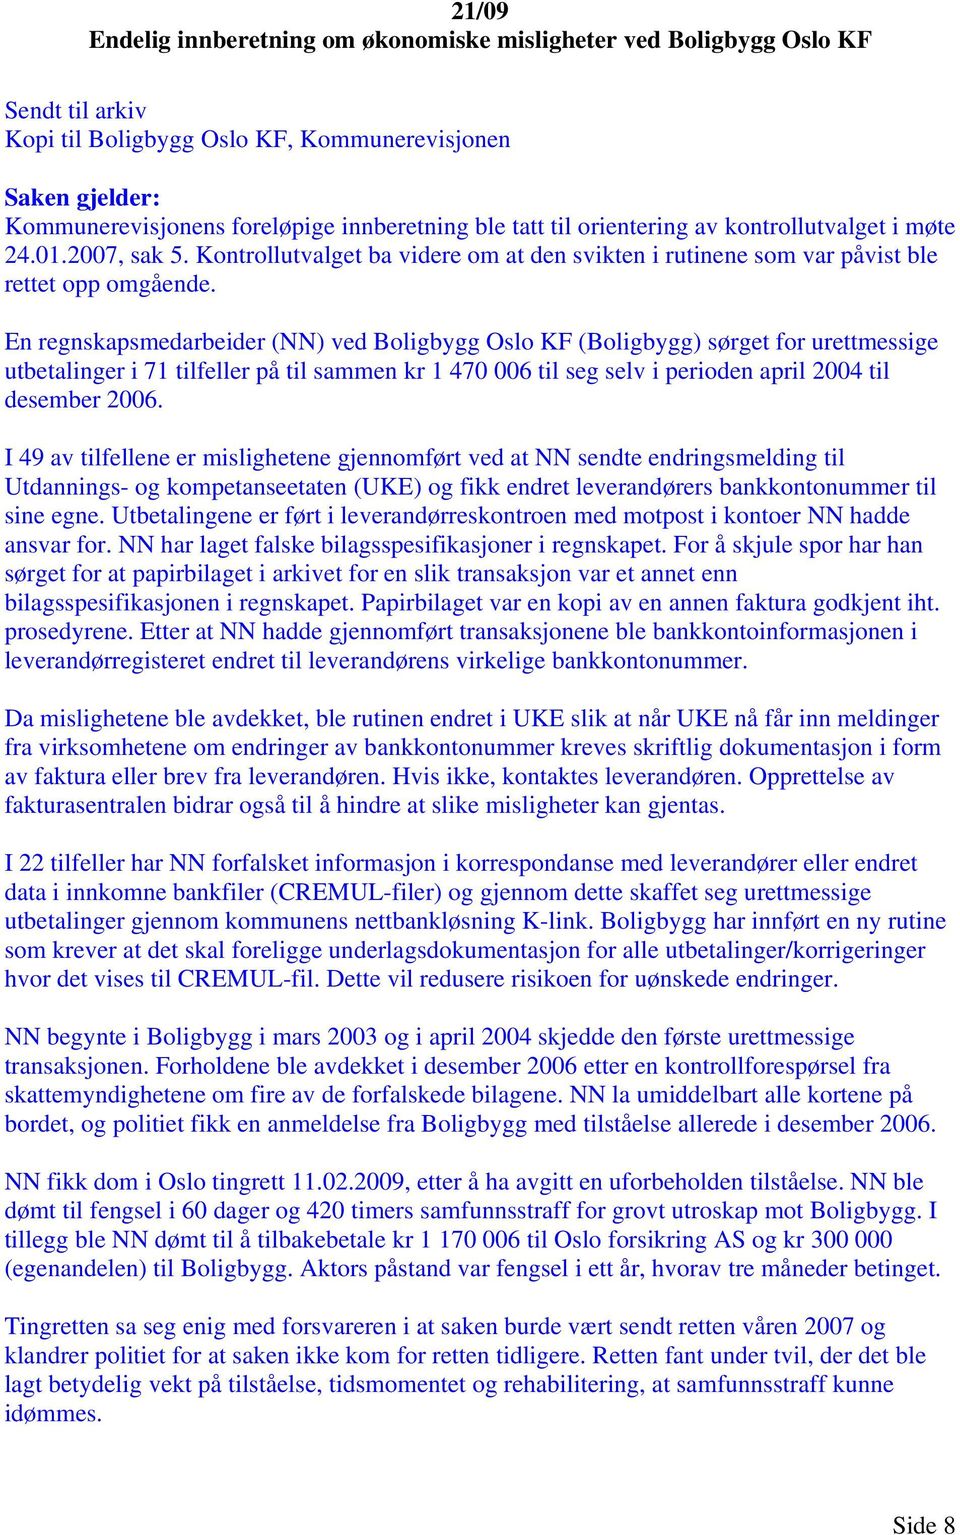 En regnskapsmedarbeider (NN) ved Boligbygg Oslo KF (Boligbygg) sørget for urettmessige utbetalinger i 71 tilfeller på til sammen kr 1 470 006 til seg selv i perioden april 2004 til desember 2006.